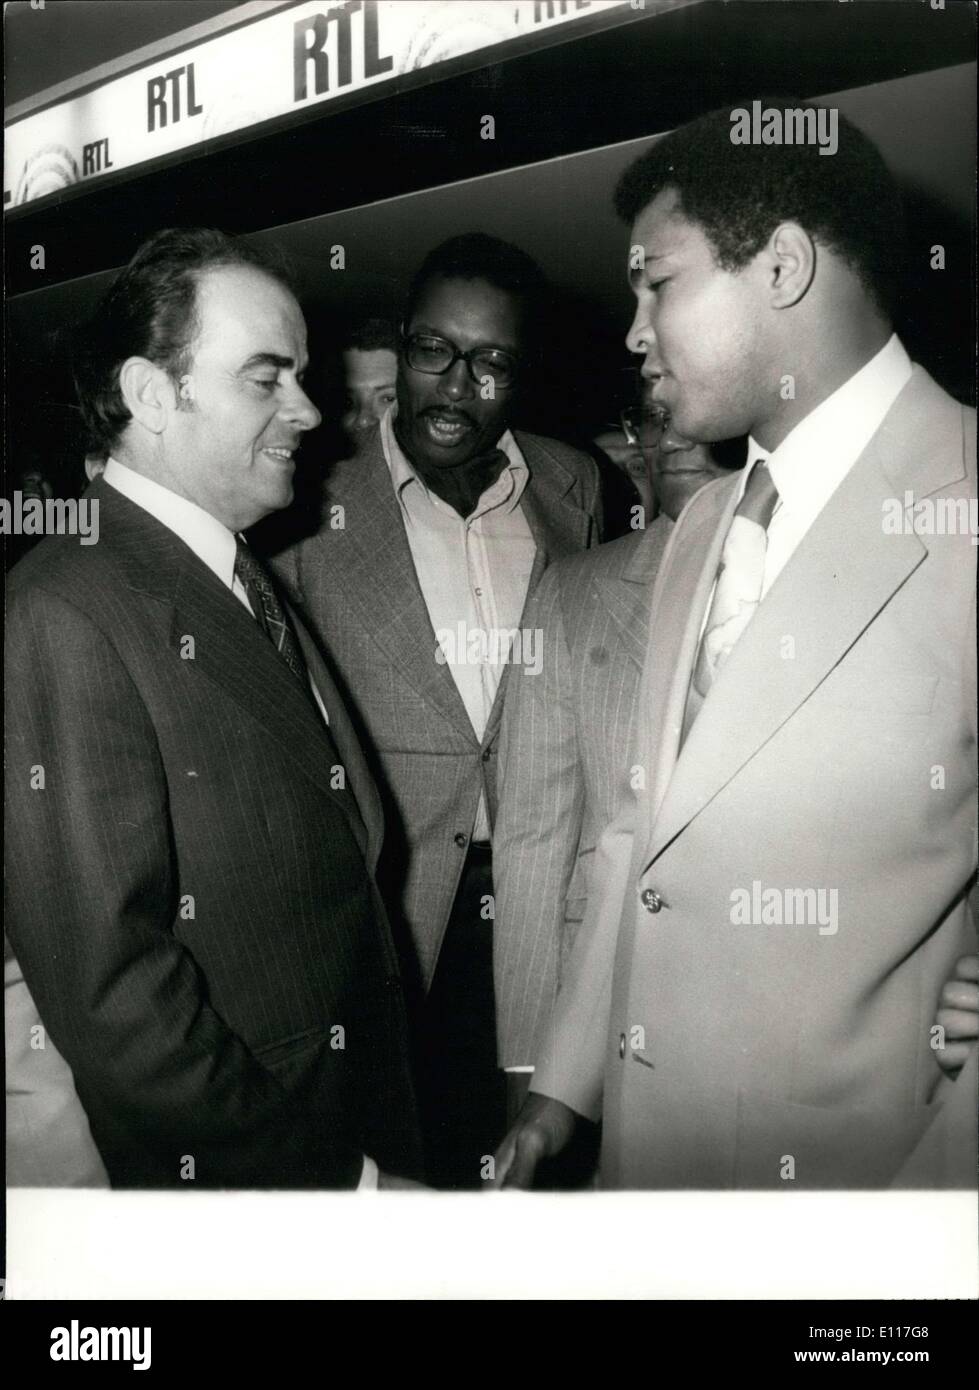 Mars 05, 1976 - célèbre boxeur américain Cassius Clay a été photographié avec Georges Marchais, le chef du Parti communiste français, lors de leur brève rencontre à Radio Télévision Luxembourg's station. Banque D'Images